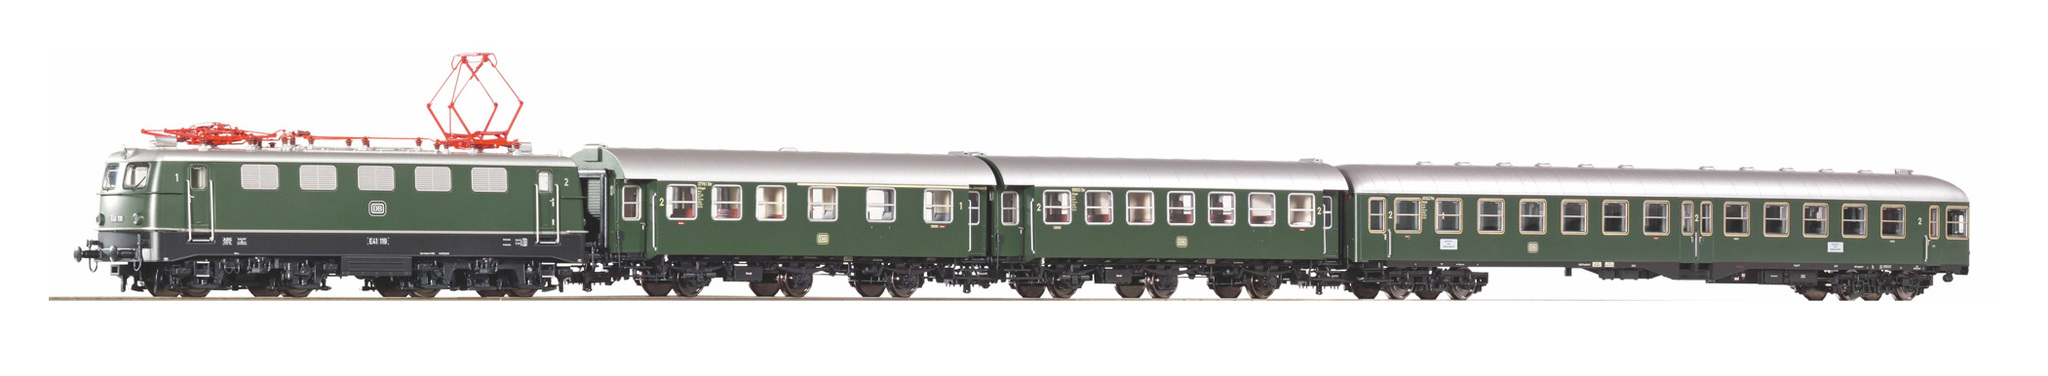 Пассажирский вагон Piko n. Piko 1/87 размер колеи. Locomotive br41 1:87. Вагоны с тремя дверьми.